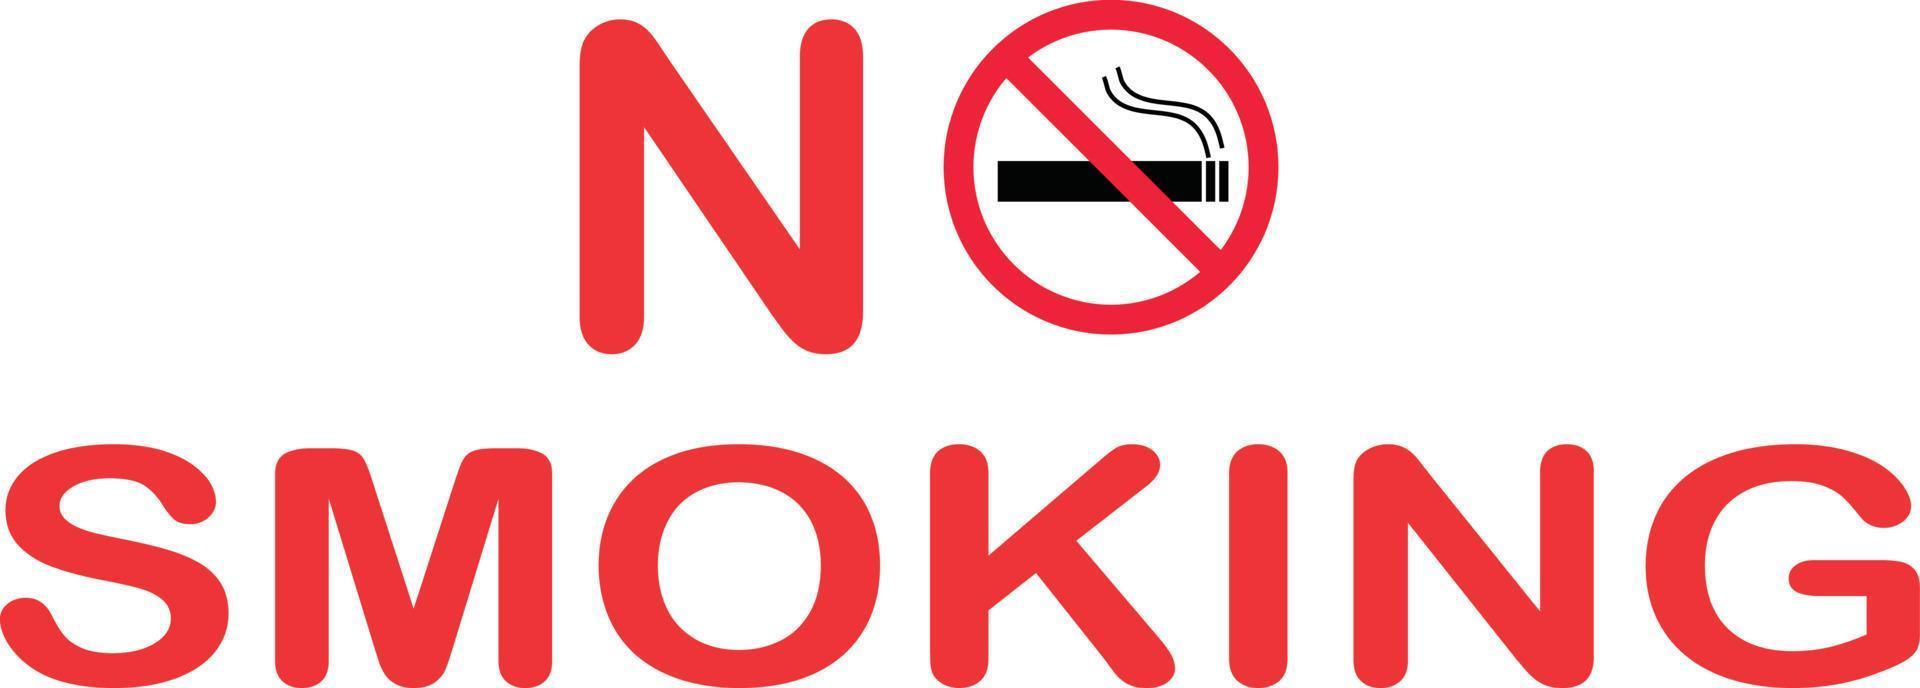 Rauchverbotsschild. Nichtraucher-Symbol. Verbotenes Zeichen. Zigarettensymbol. vektor